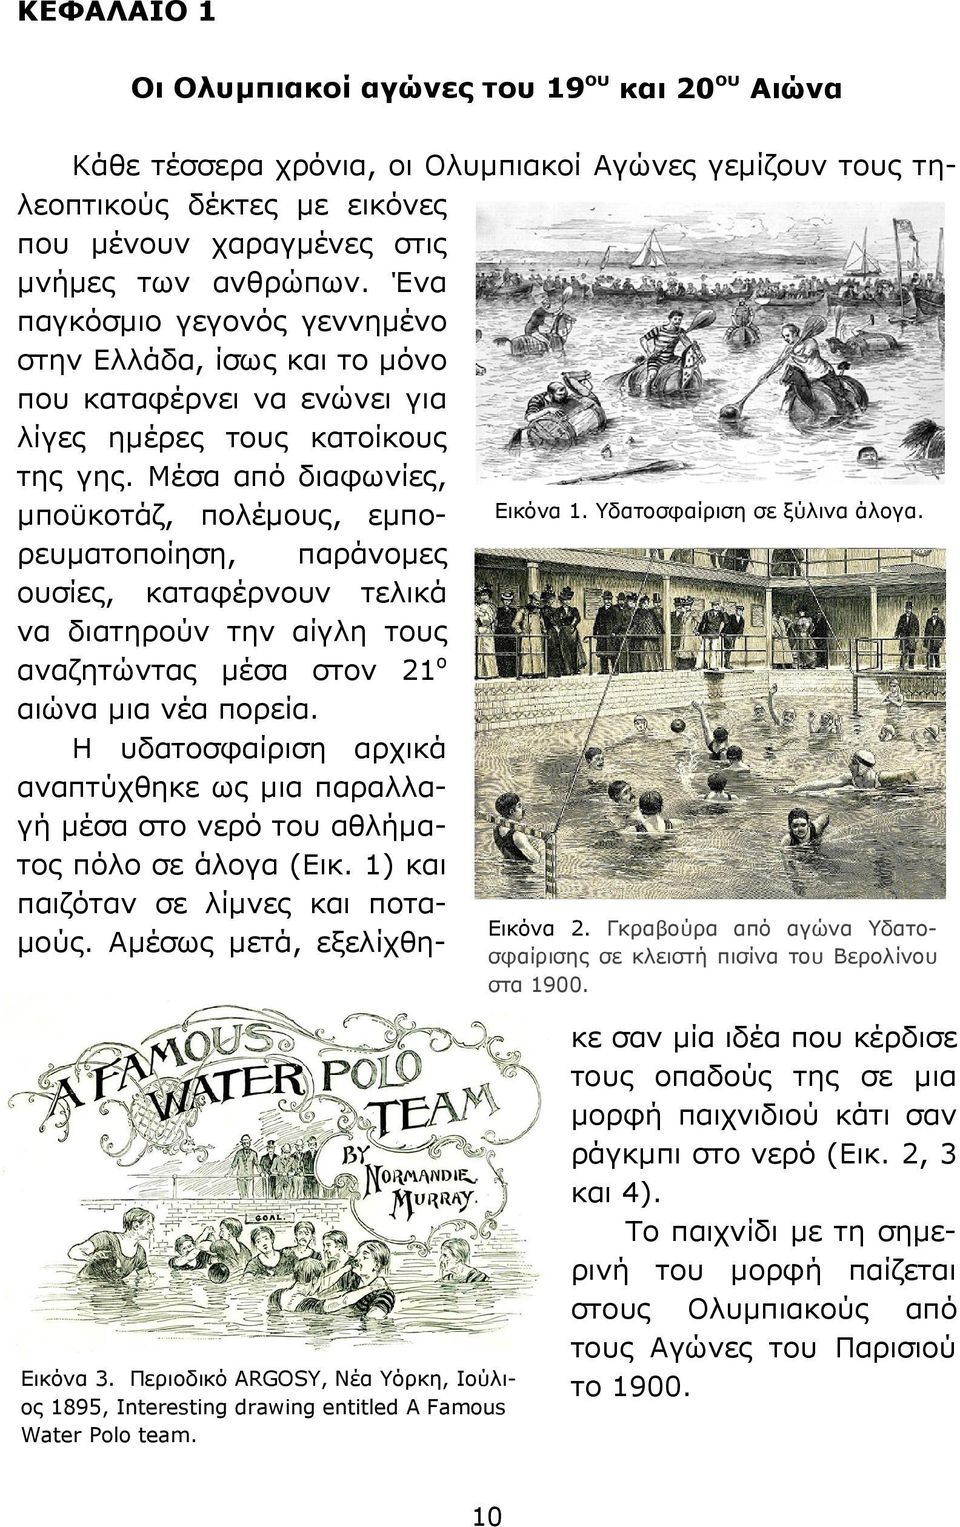 Υδατοσφαίριση σε ξύλινα άλογα. παράνομες Εικόνα 2. Γκραβούρα από αγώνα Υδατοσφαίρισης σε κλειστή πισίνα του Βερολίνου στα 1900. Εικόνα 3.